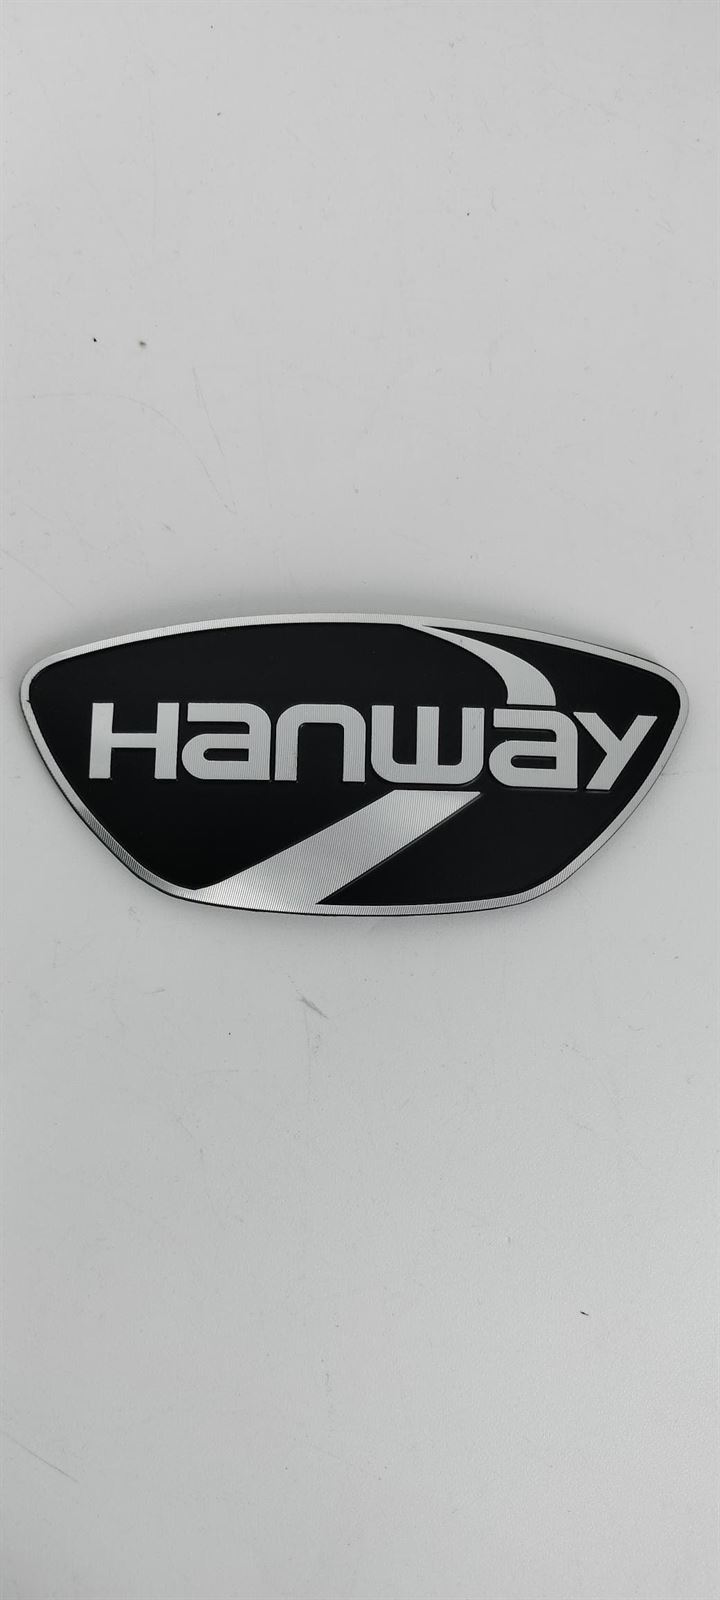 Calca / emblema Hanway - Imagen 1